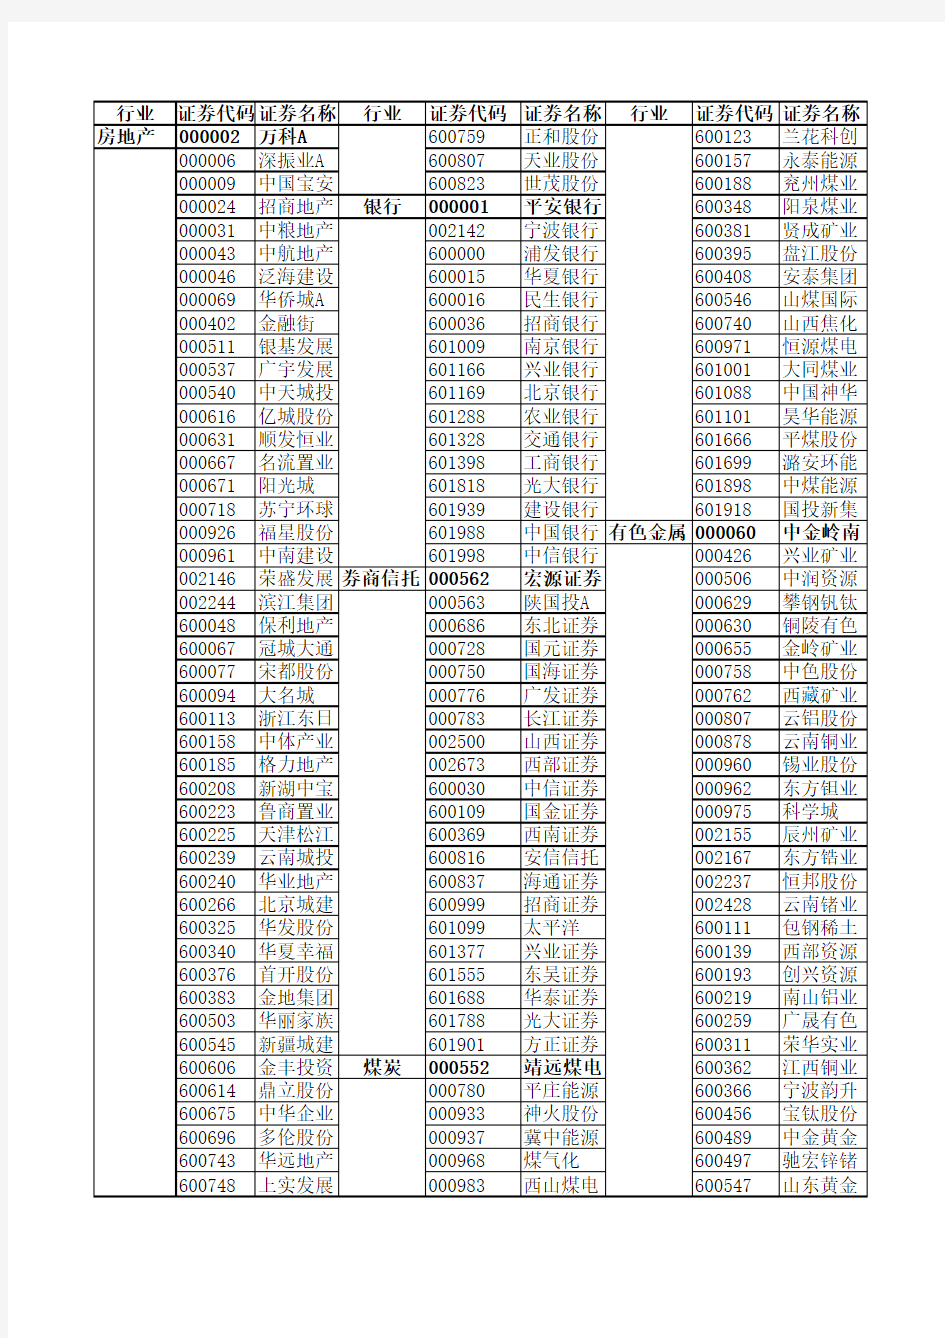 2013年融资融券500标的名单(行业已细分)